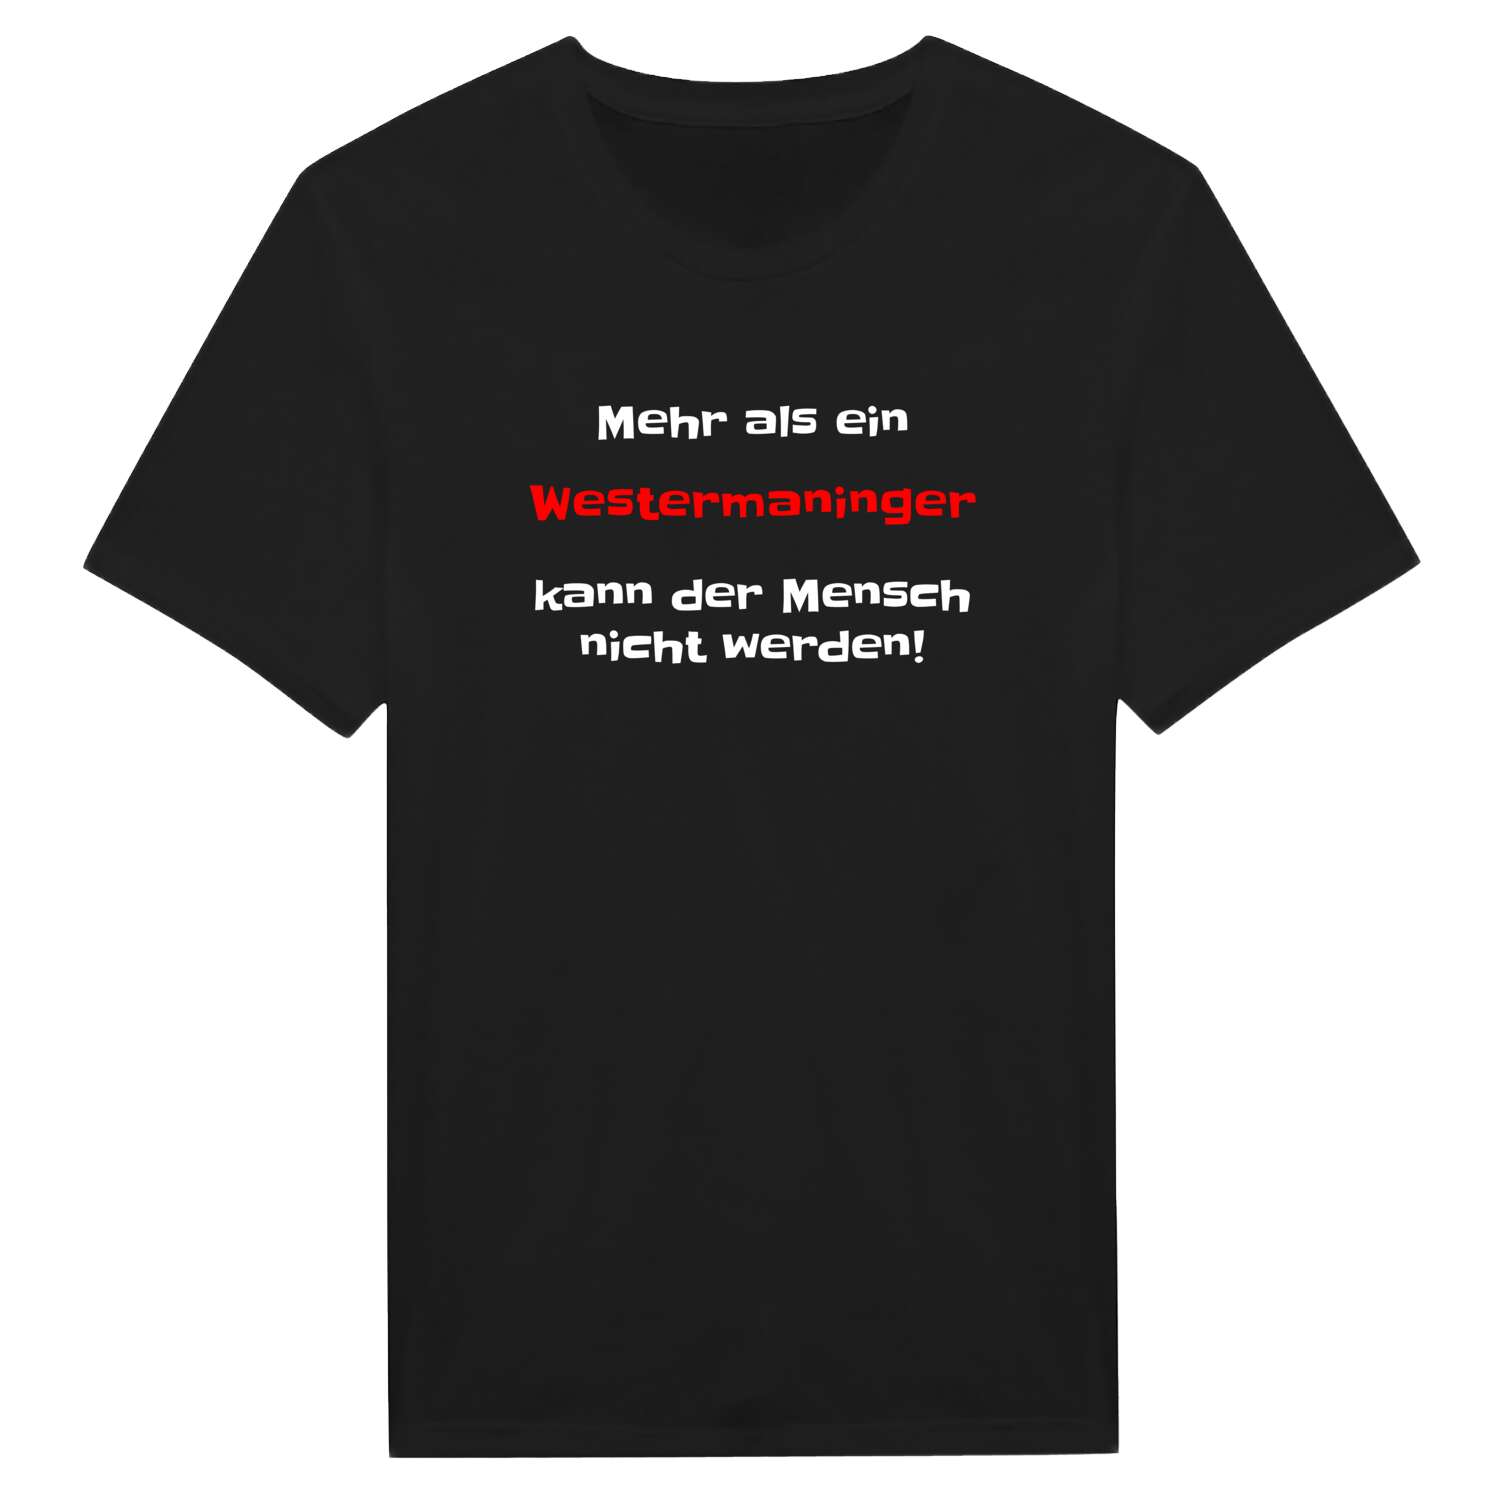 Westermaning T-Shirt »Mehr als ein«